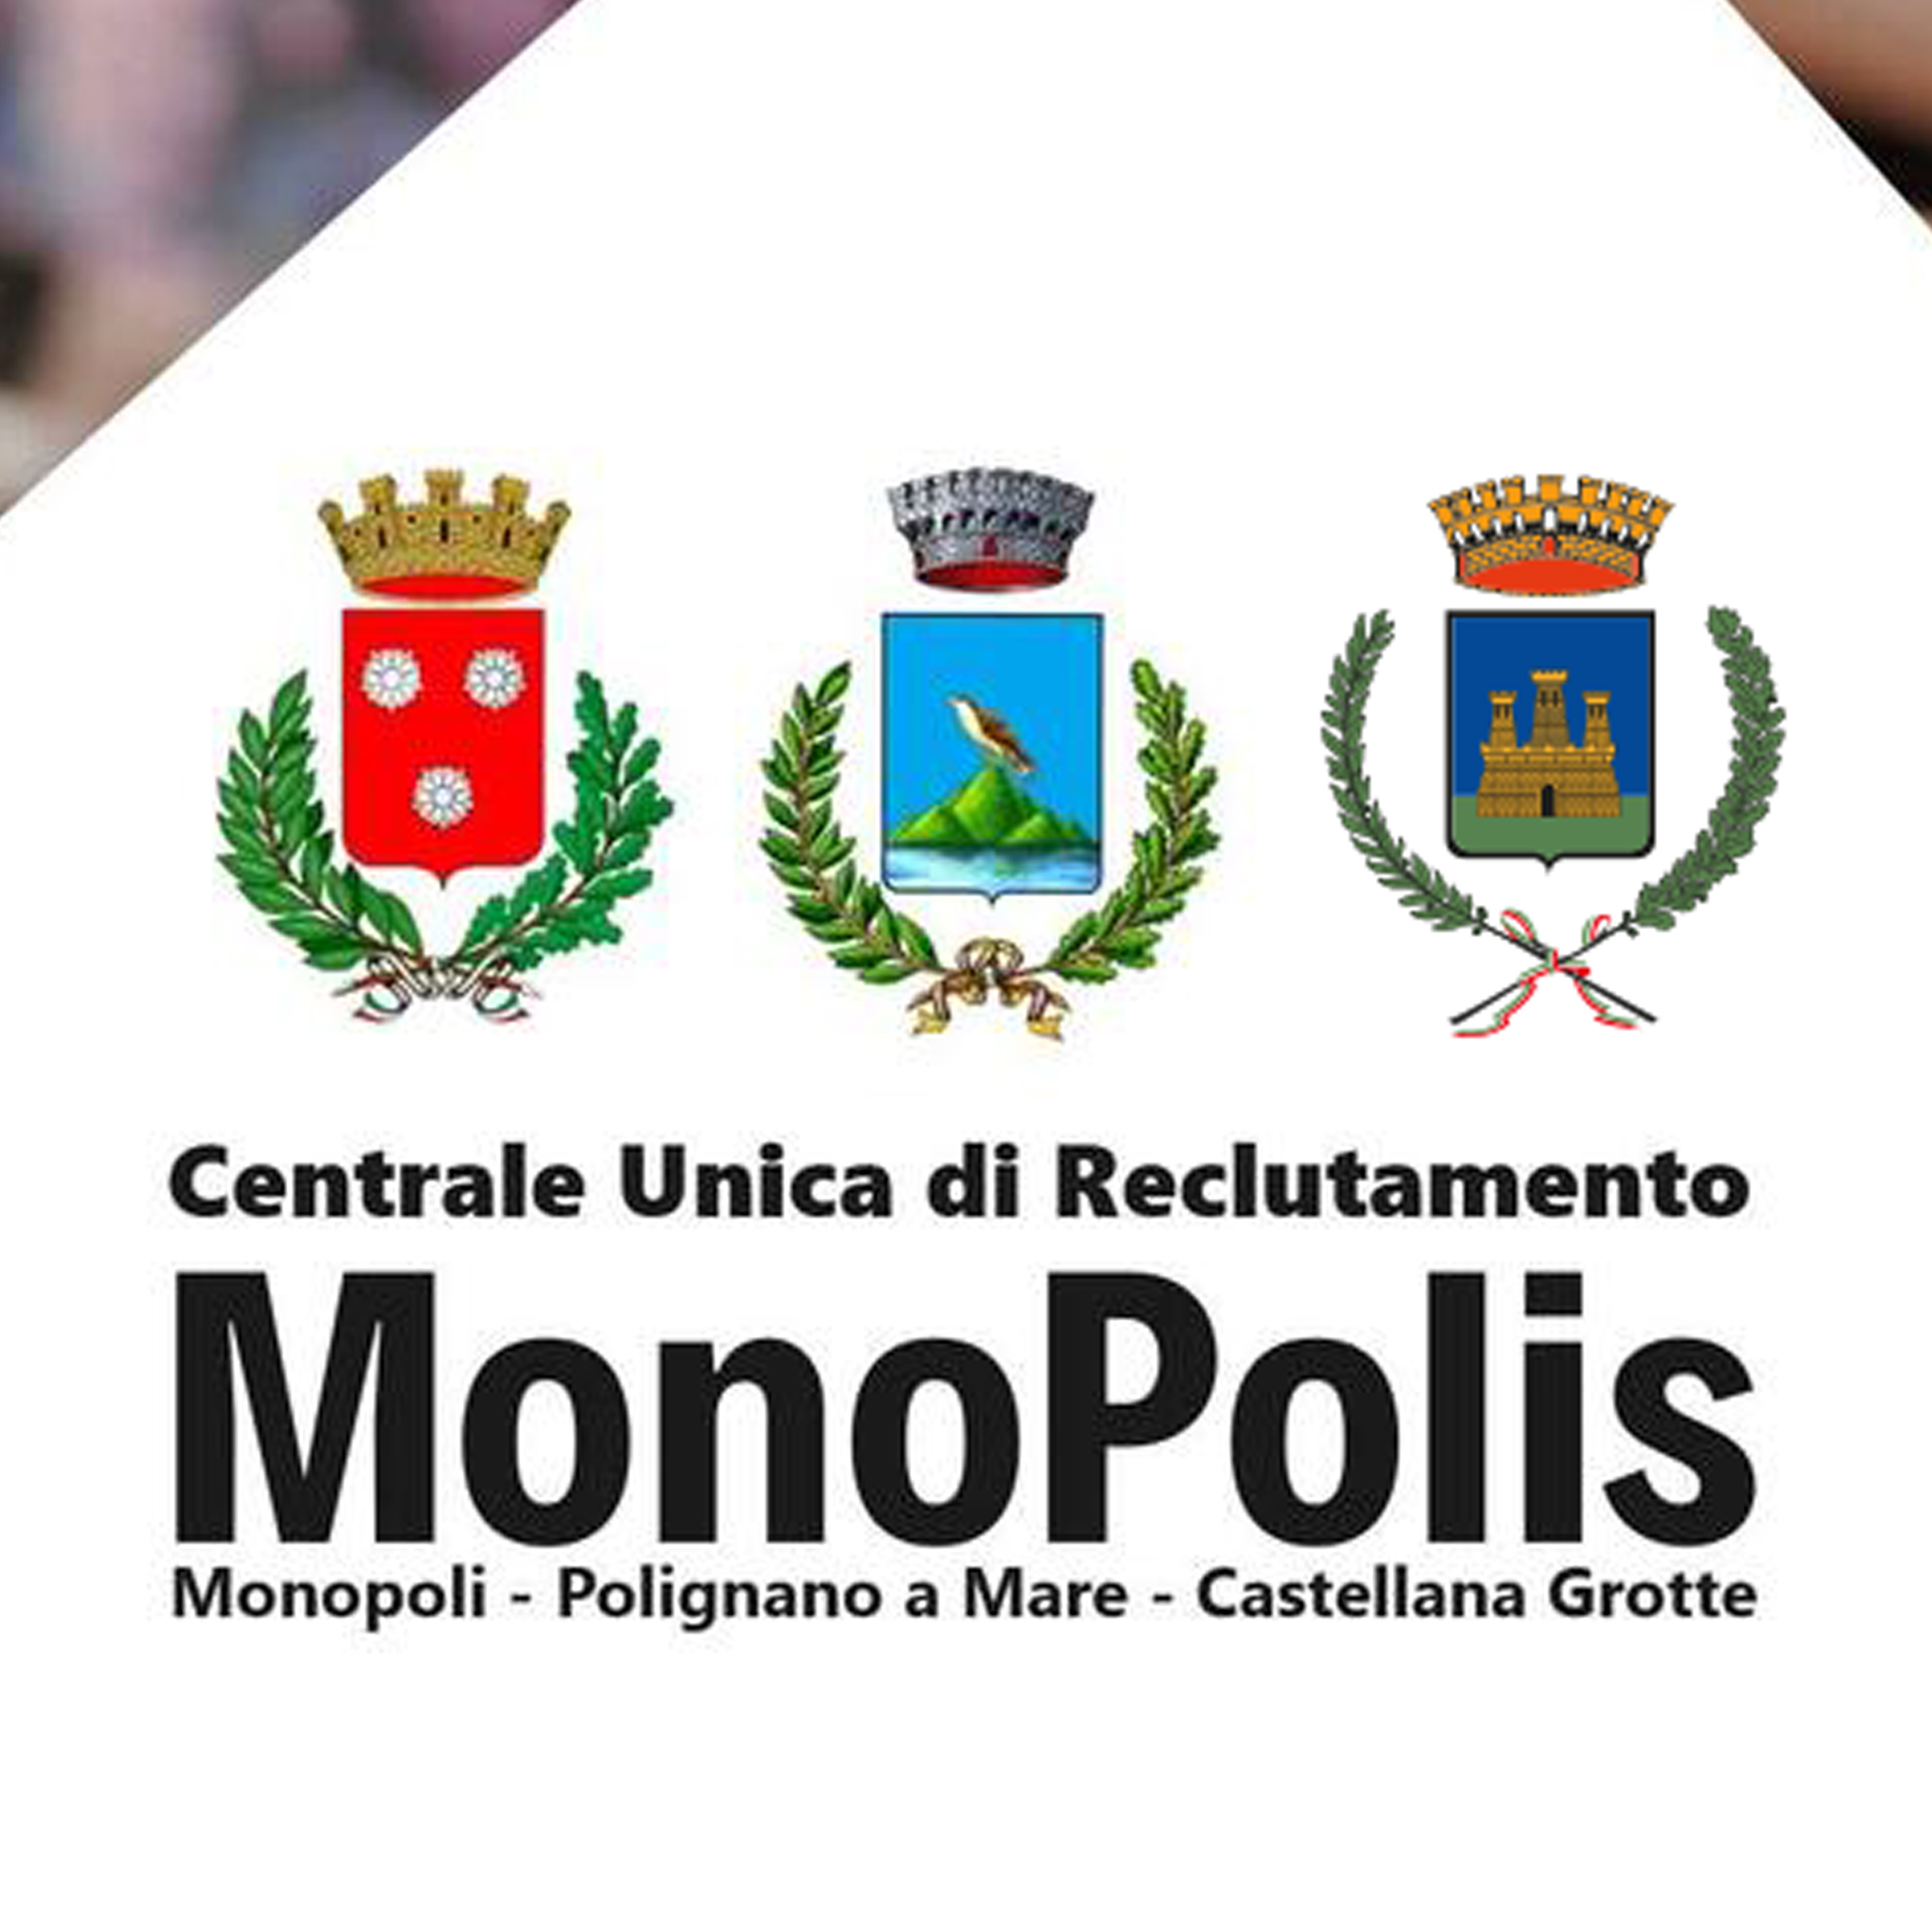 MonoPolis - Centrale Unica di Reclutamento